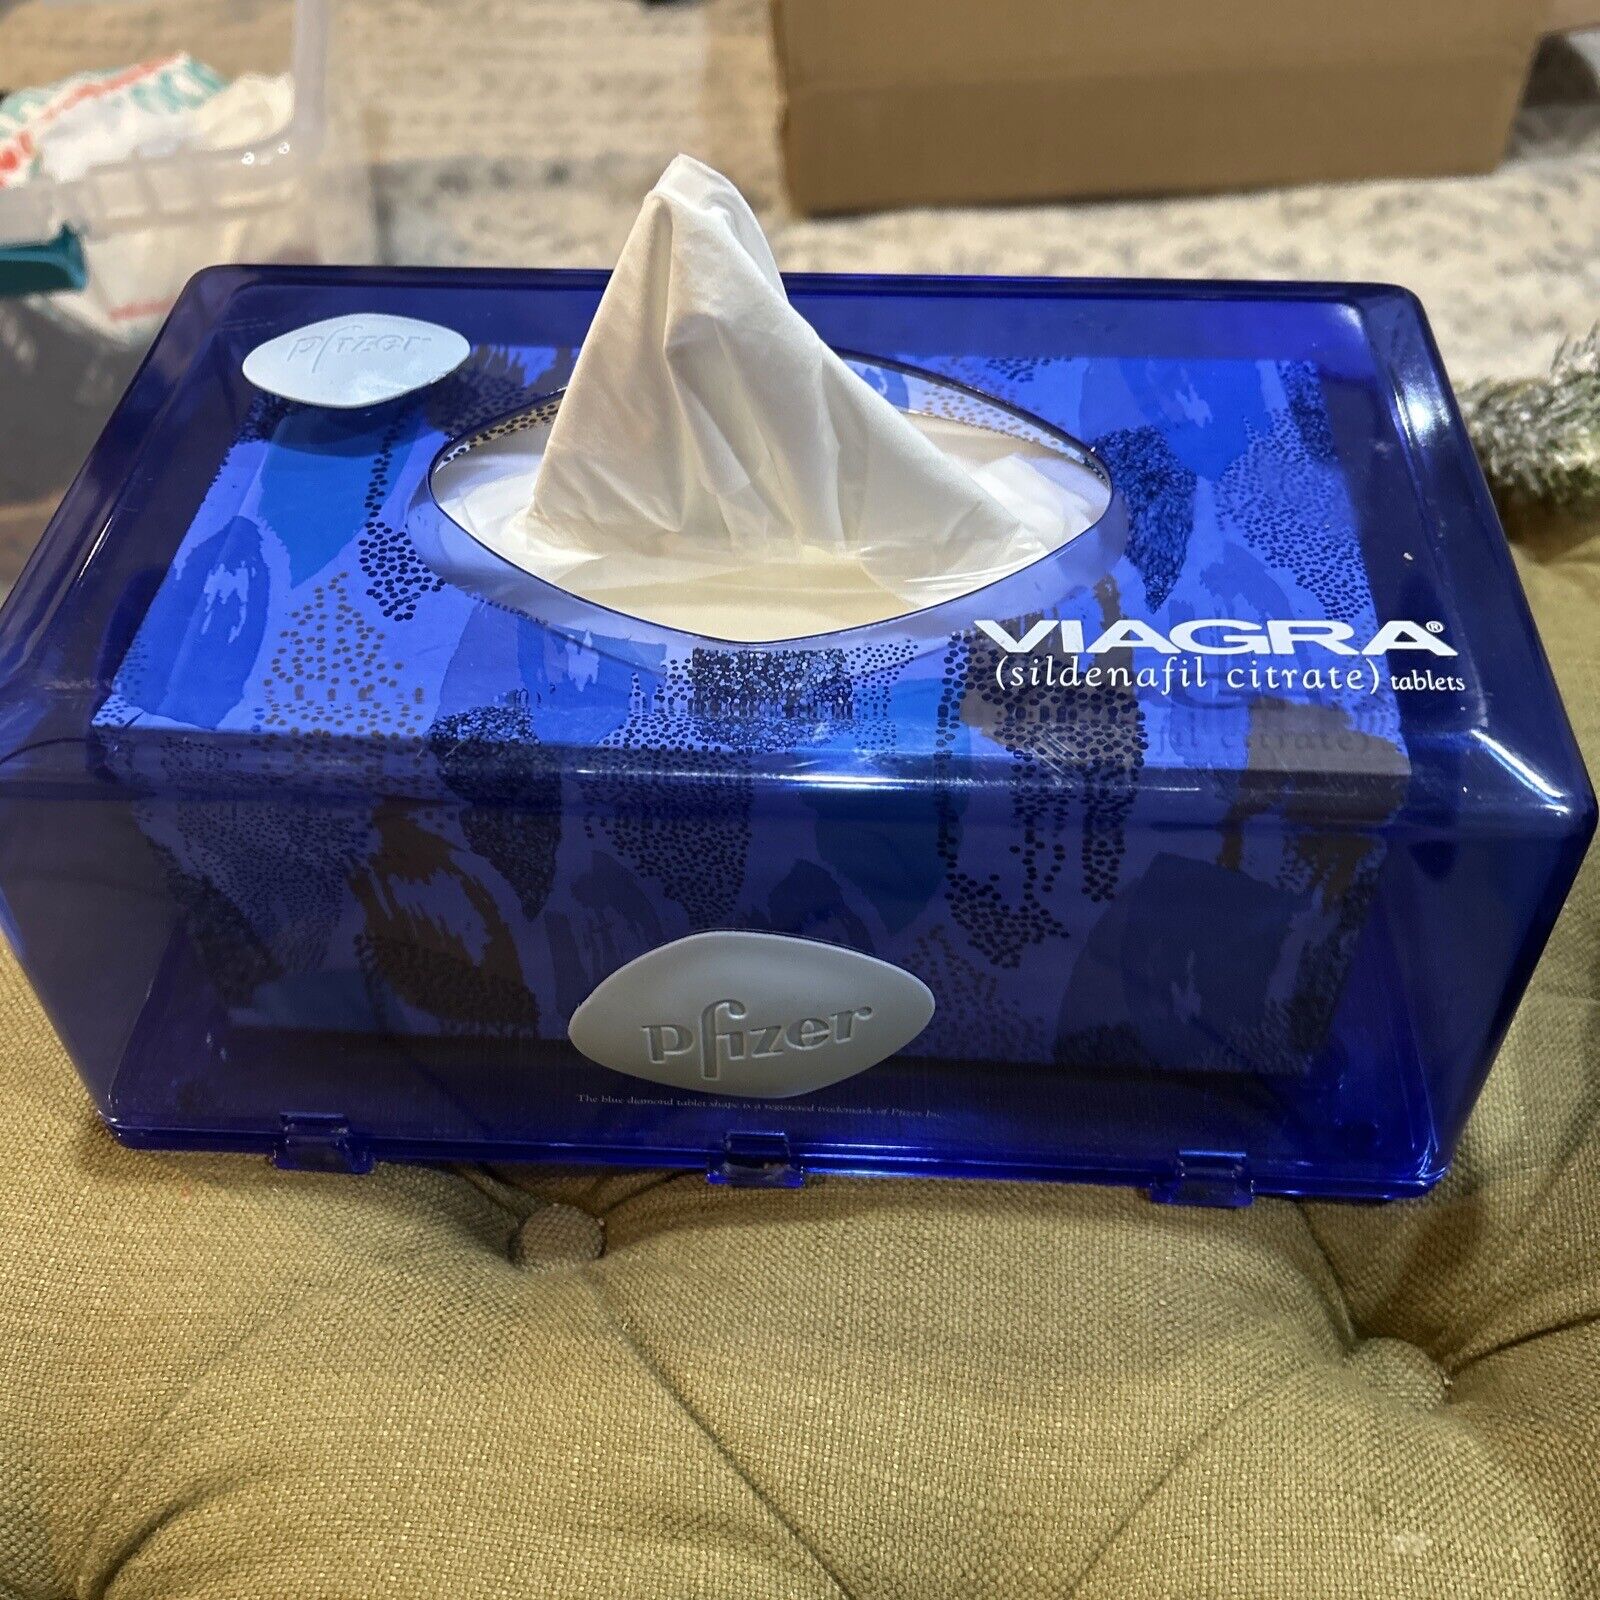 Viagra Pharma Promotional Advertising Tissue Or Glove Box Holder